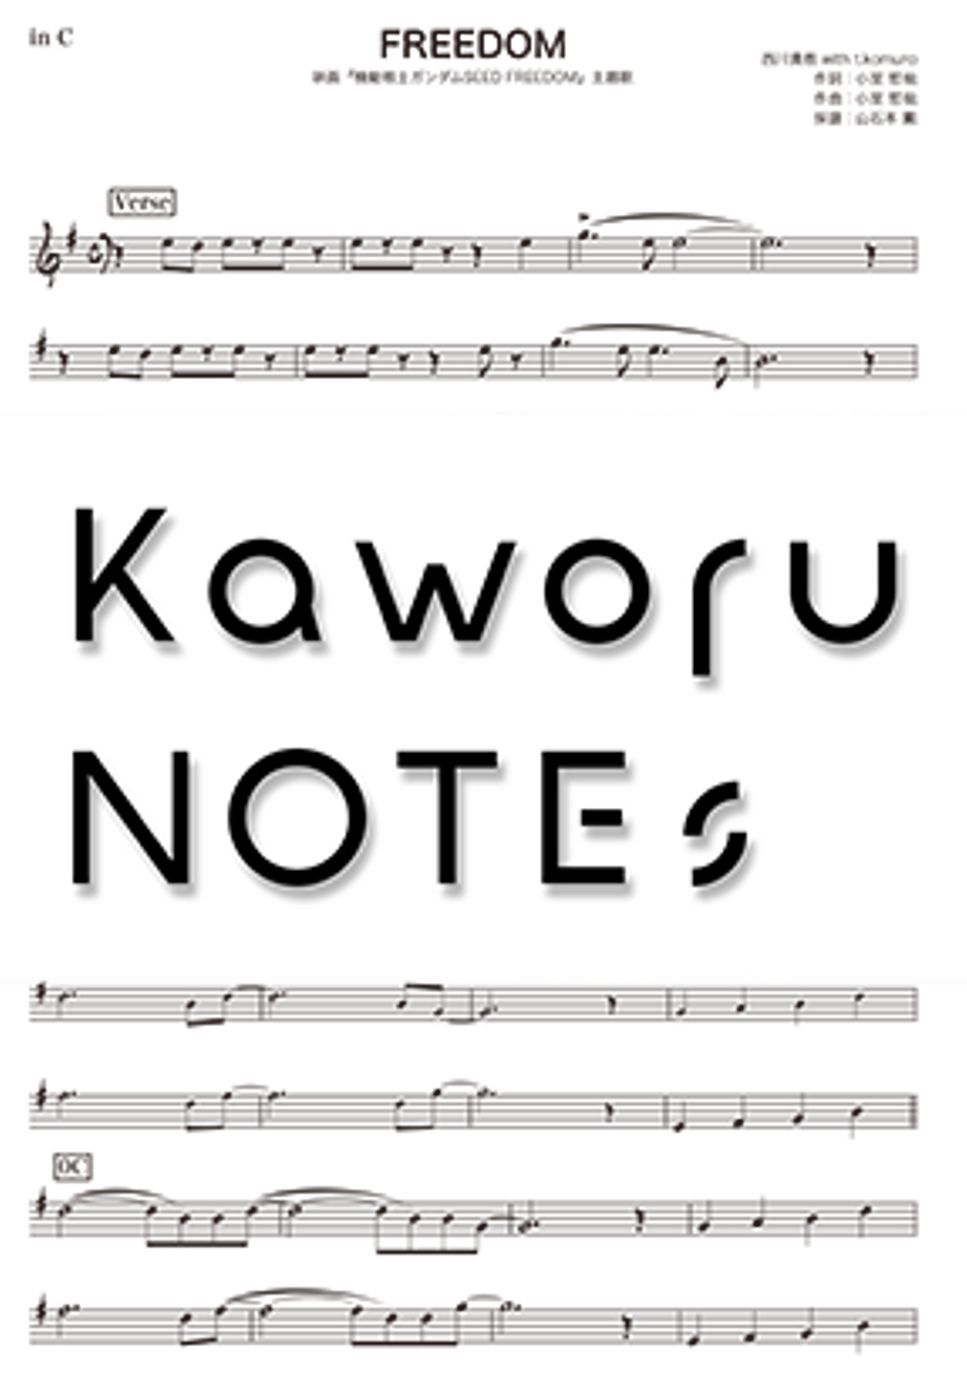 西川貴教 - FREEDOM（in E♭ /映画『機動戦士ガンダムSEED FREEDOM』主題歌） by Kaworu NOTEs